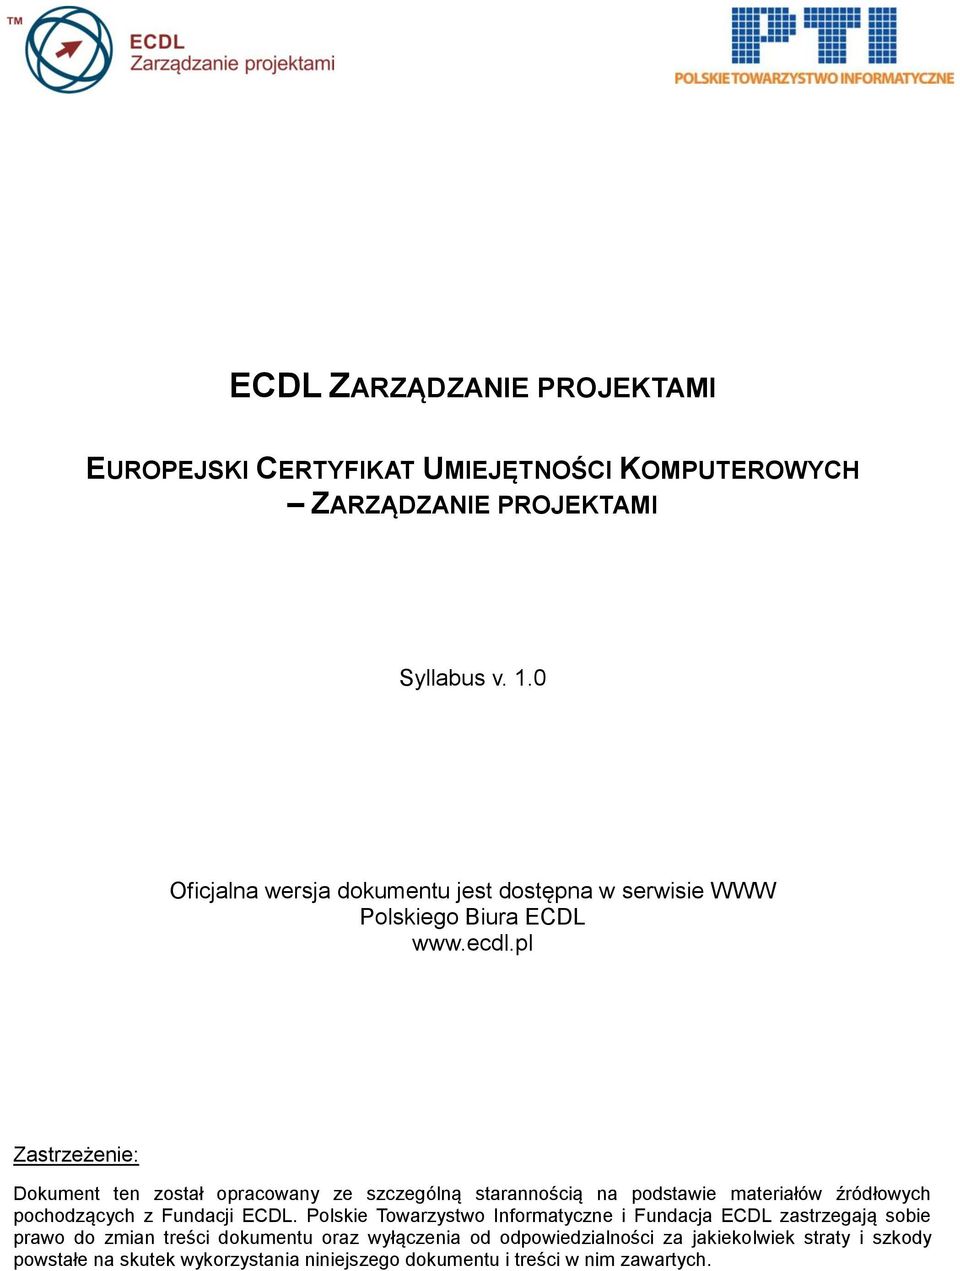 pl Zastrzeżenie: Dokument ten został opracowany ze szczególną starannością na podstawie materiałów źródłowych pochodzących z Fundacji ECDL.